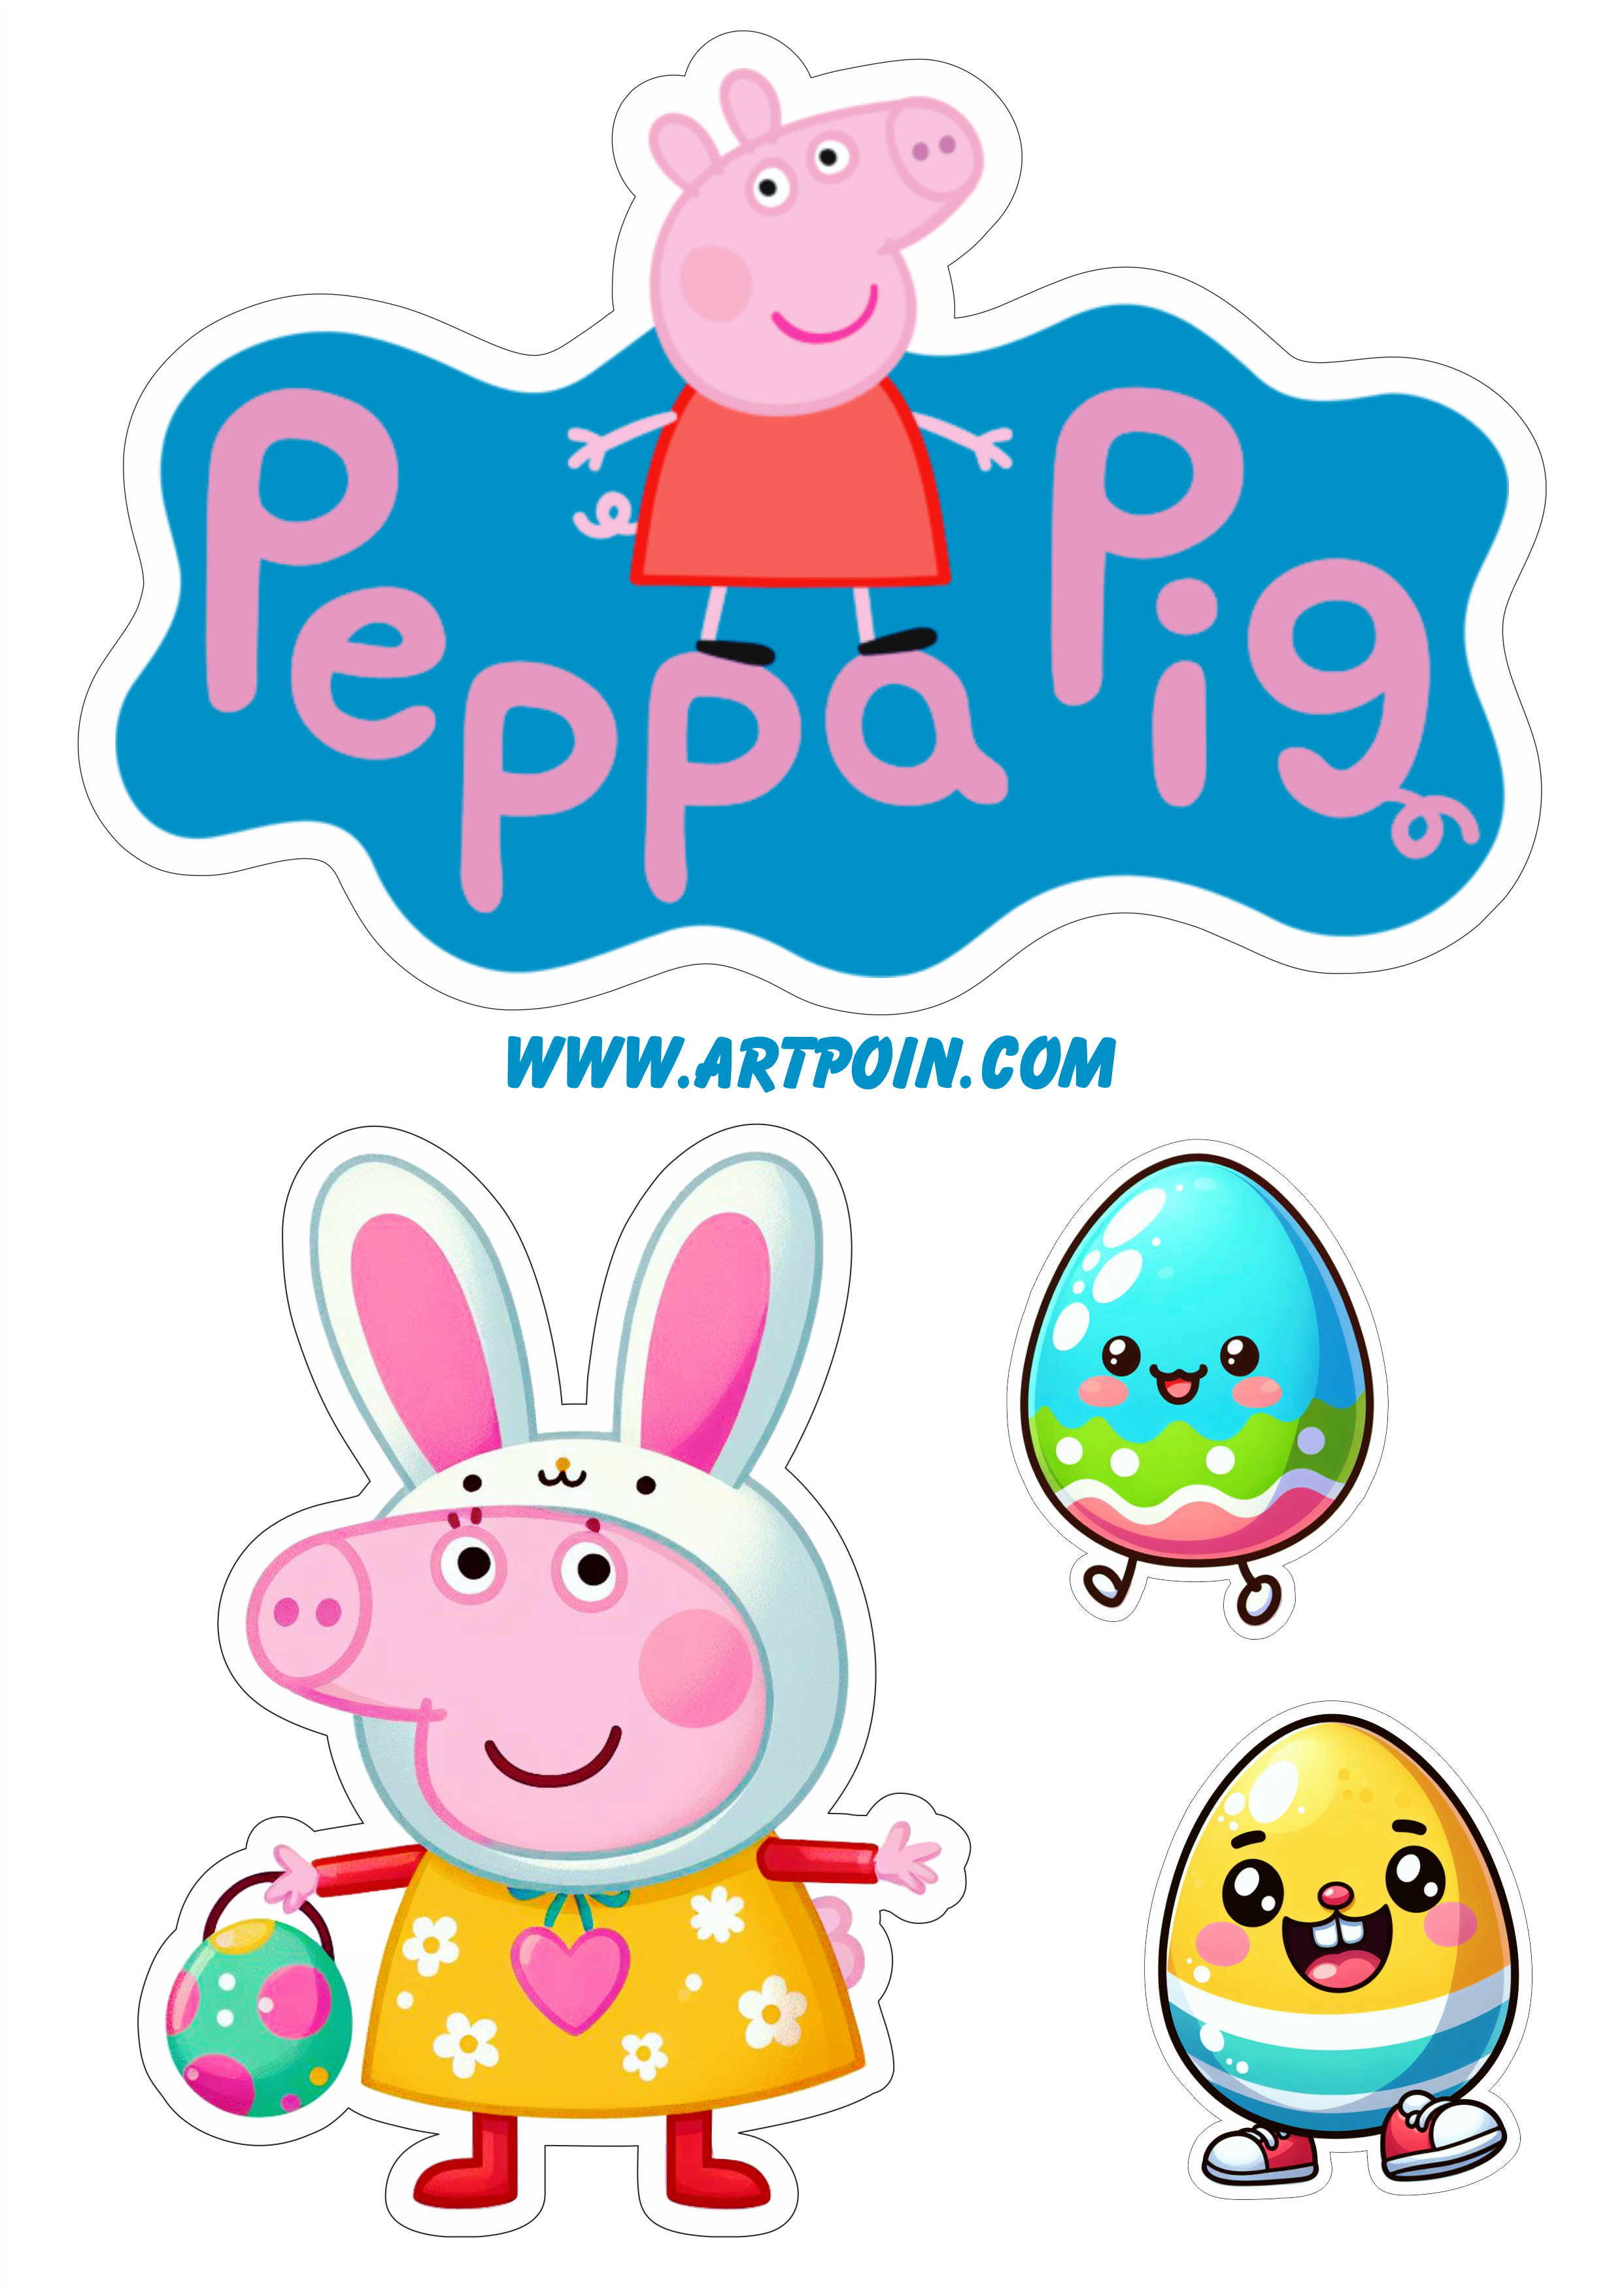 Peppa Pig topo de bolo páscoa desenho infantil decoração ovos de chocolate hora da festa png